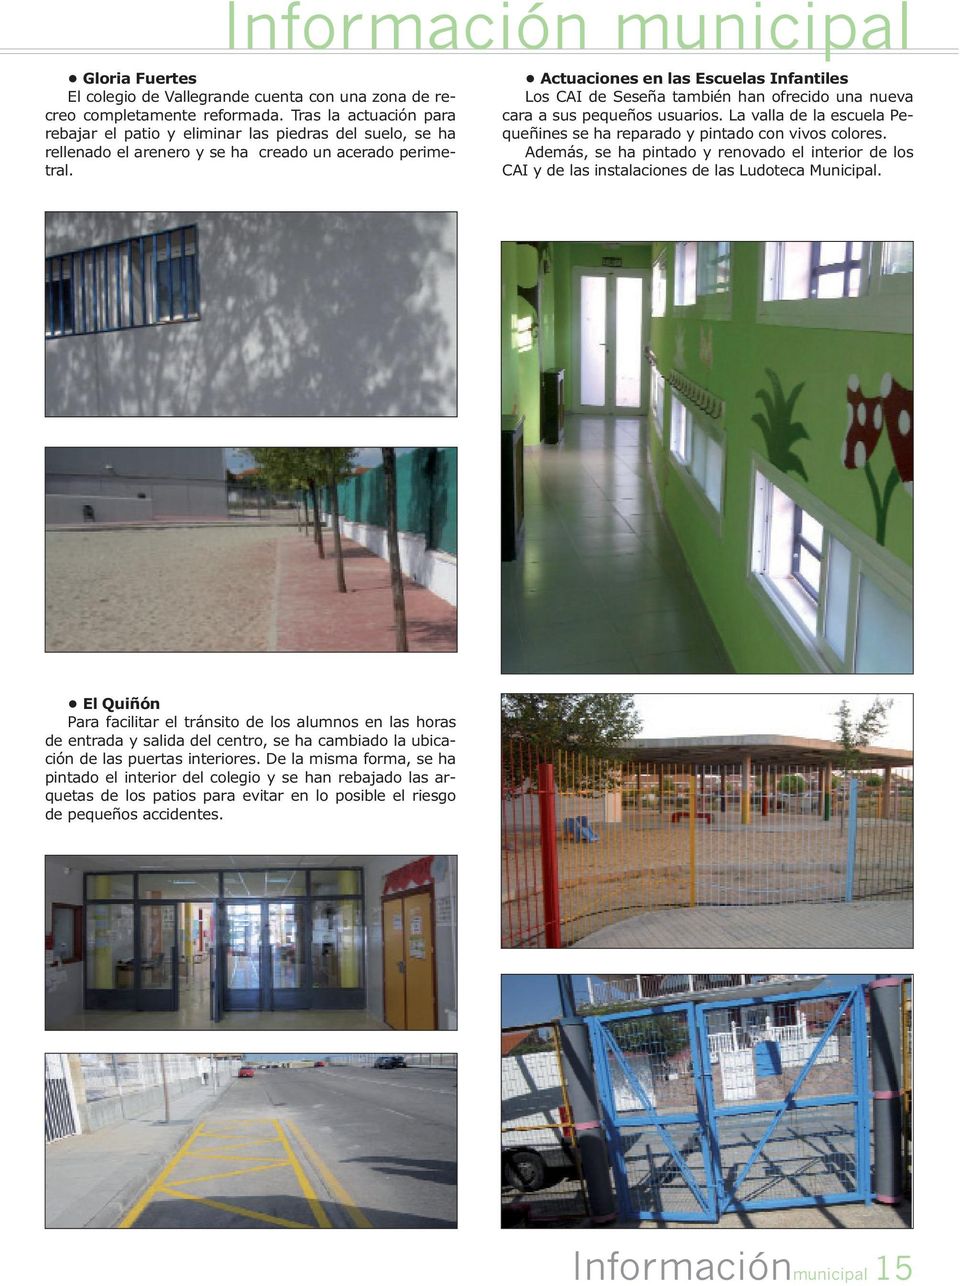 Actuaciones en las Escuelas Infantiles Los CAI de Seseña también han ofrecido una nueva cara a sus pequeños usuarios. La valla de la escuela Pequeñines se ha reparado y pintado con vivos colores.